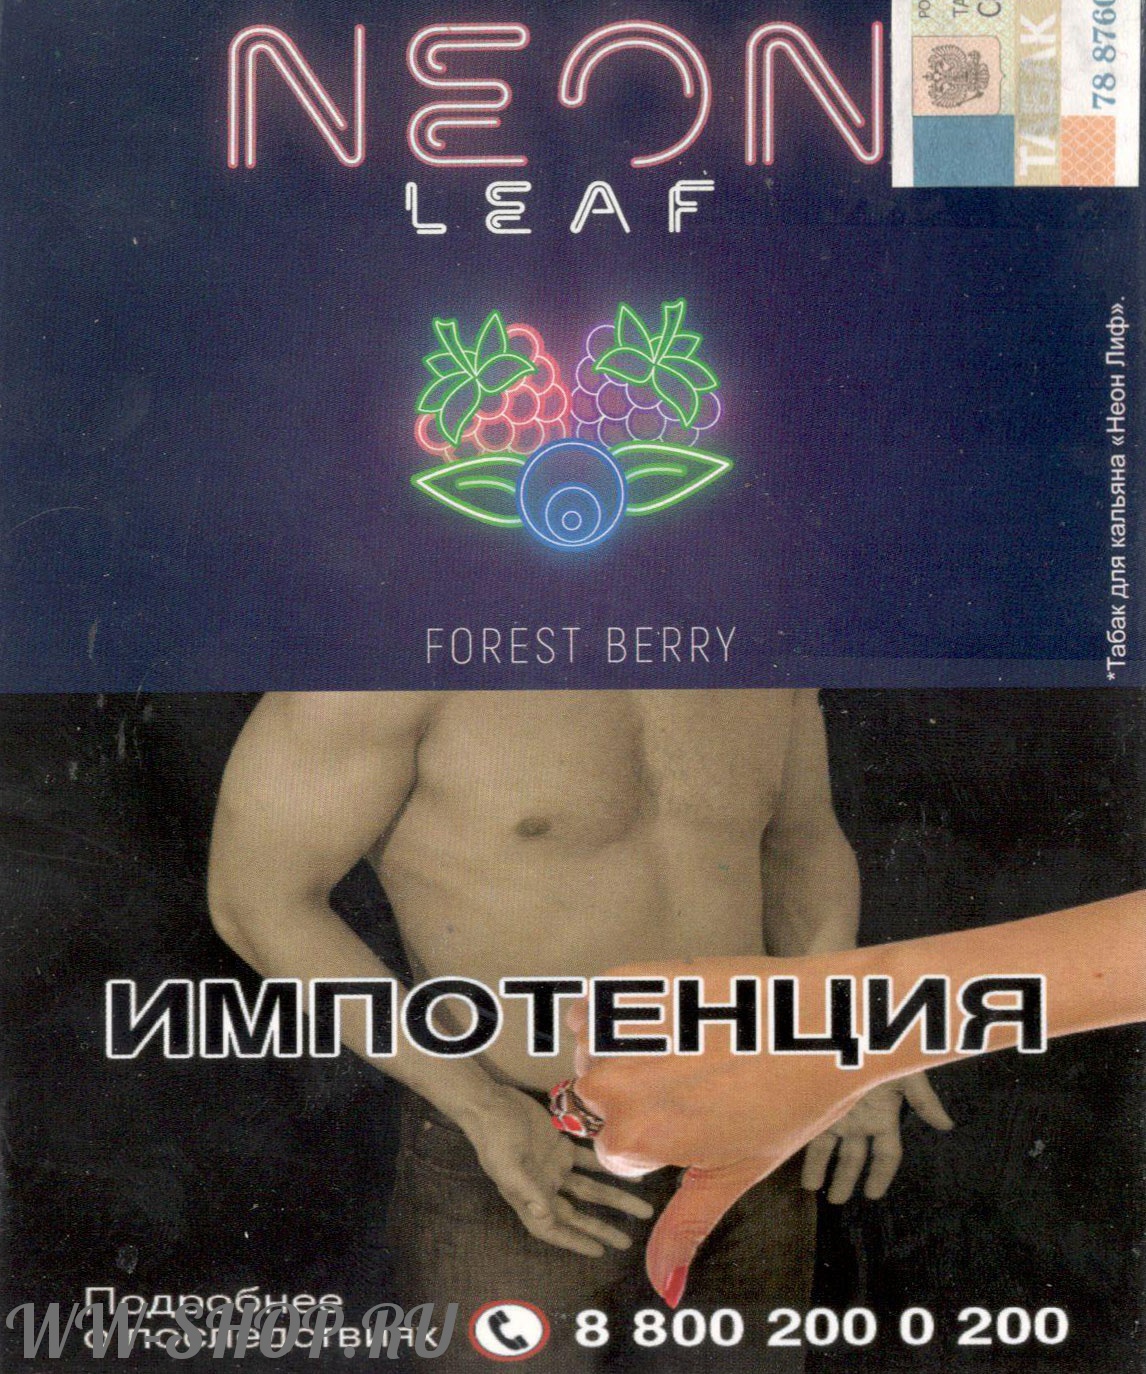 табак neon leaf- лесная ягода (forest berry) Красноярск